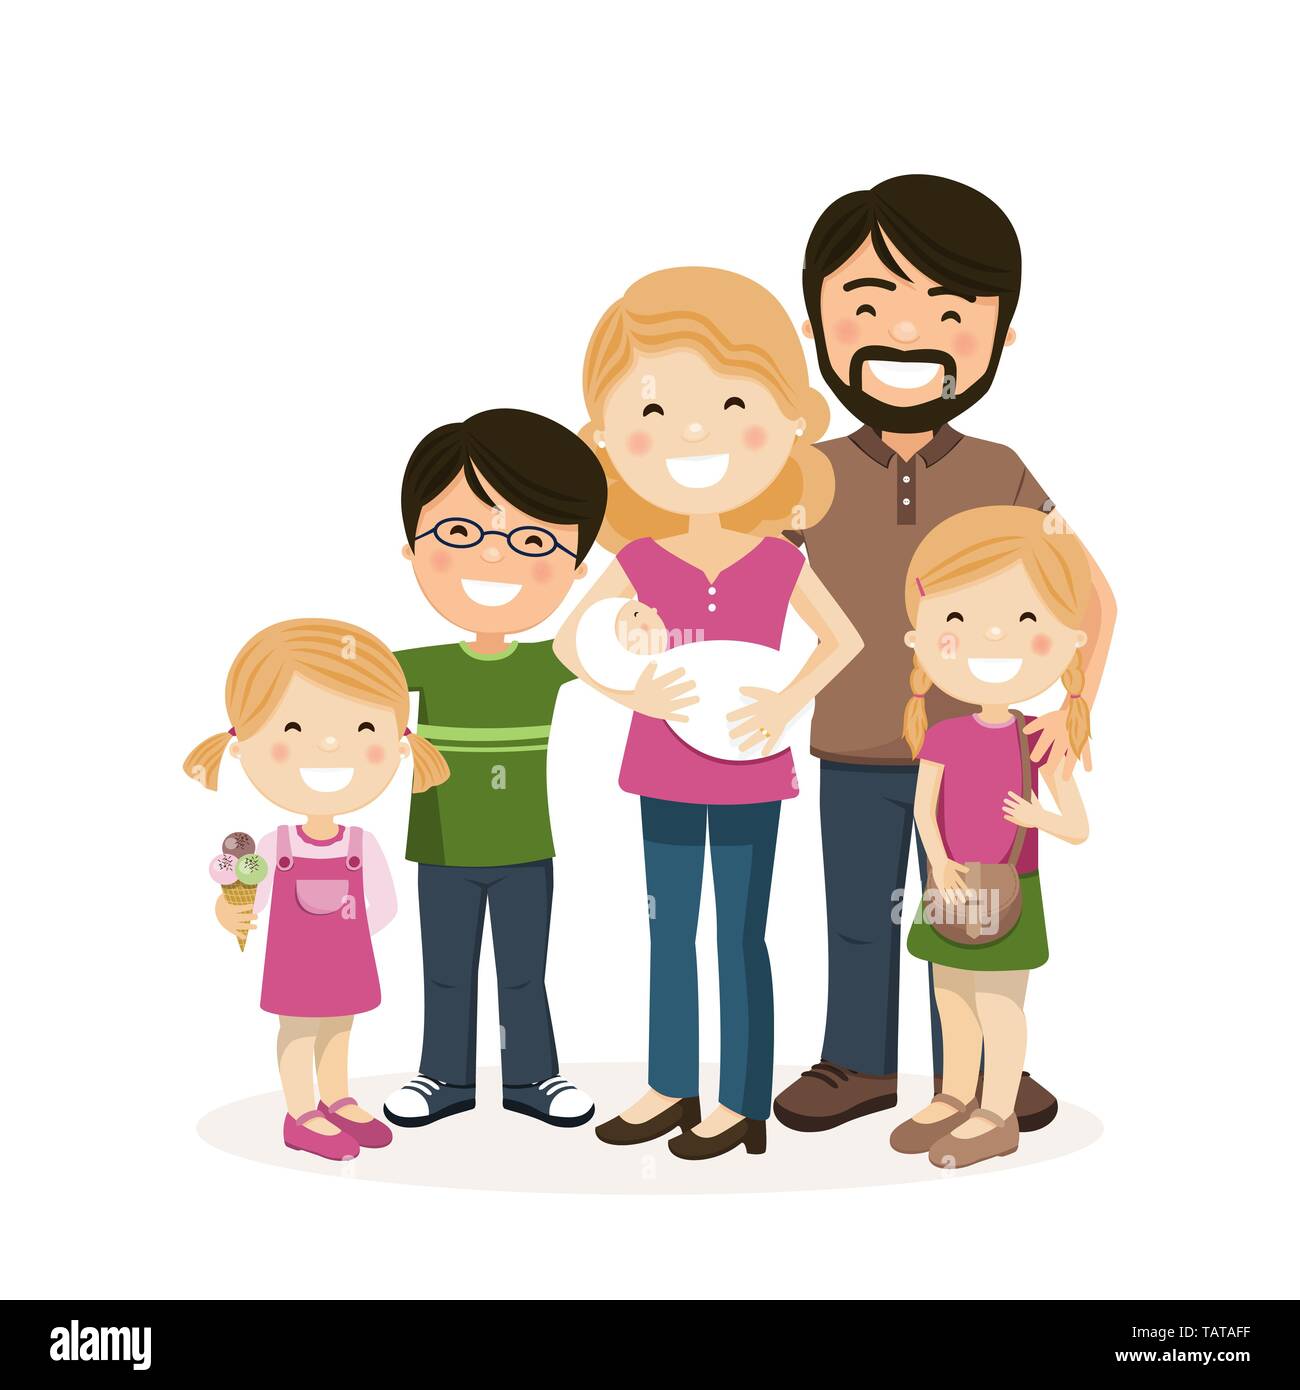 Glückliche Familie mit Eltern, 3 Kinder und babyborn. Isolierte Menschen Vector Illustration Stock Vektor